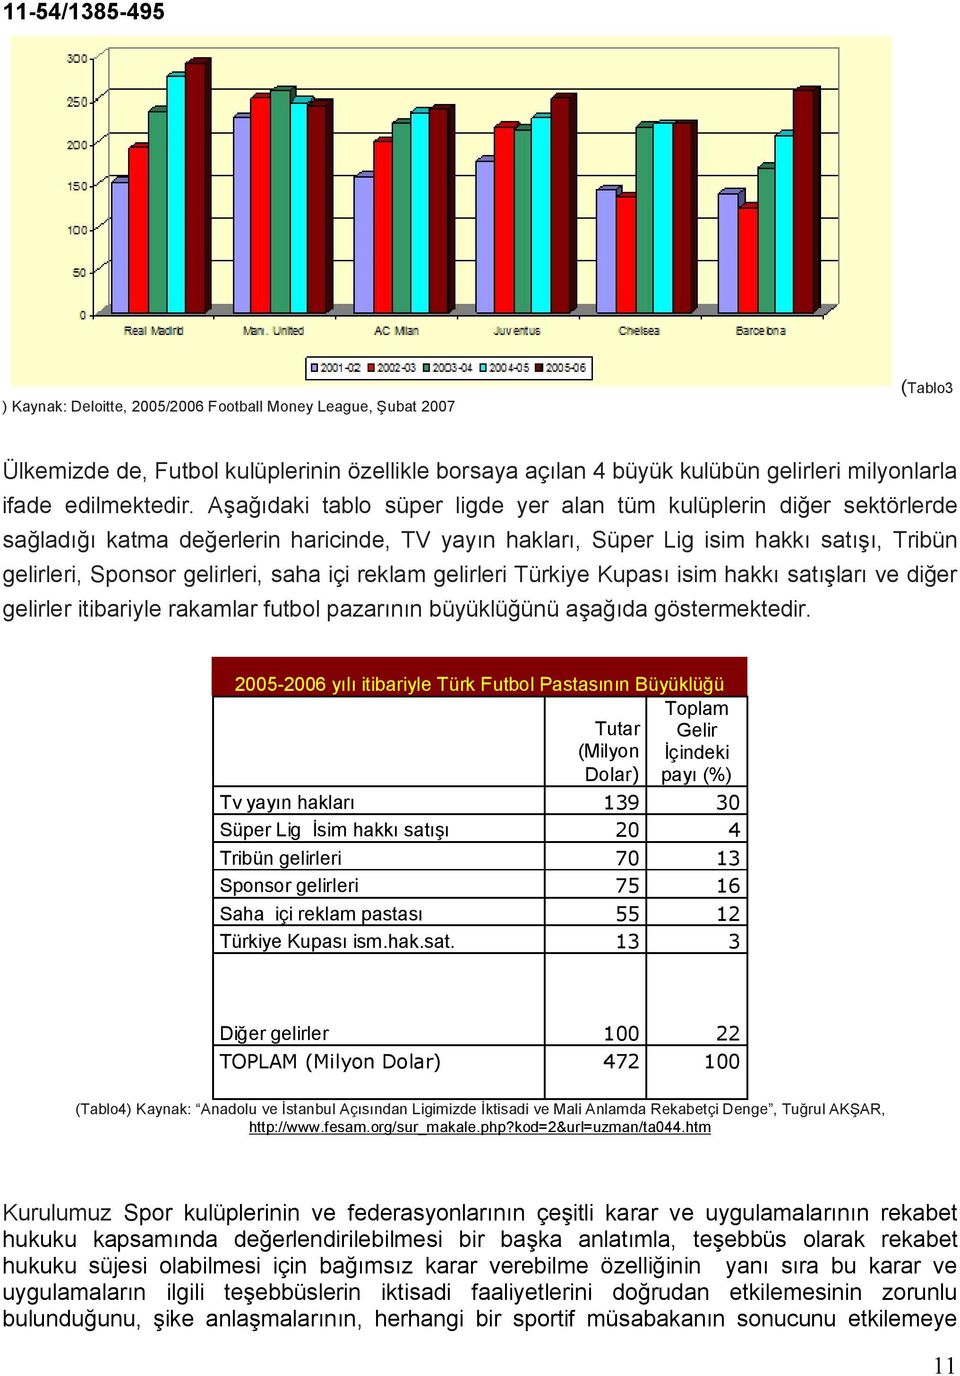 içi reklam gelirleri Türkiye Kupası isim hakkı satışları ve diğer gelirler itibariyle rakamlar futbol pazarının büyüklüğünü aşağıda göstermektedir.